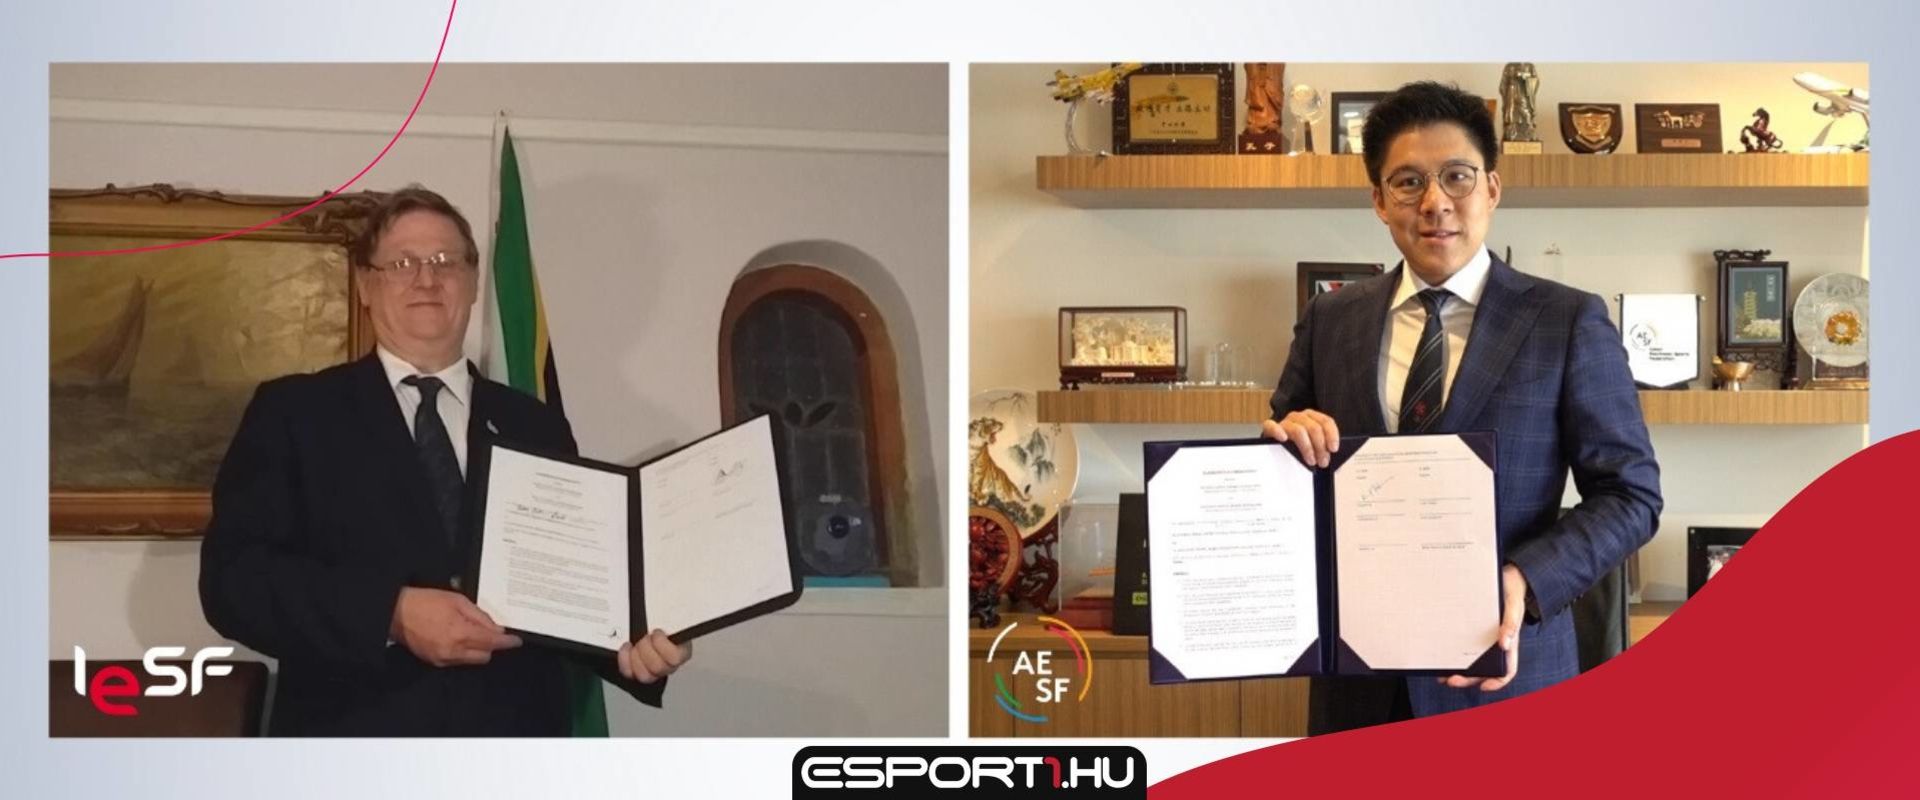 Együttműködési megállapodást írt alá az IESF és az AESF - Együtt dolgoznak az e-sportért